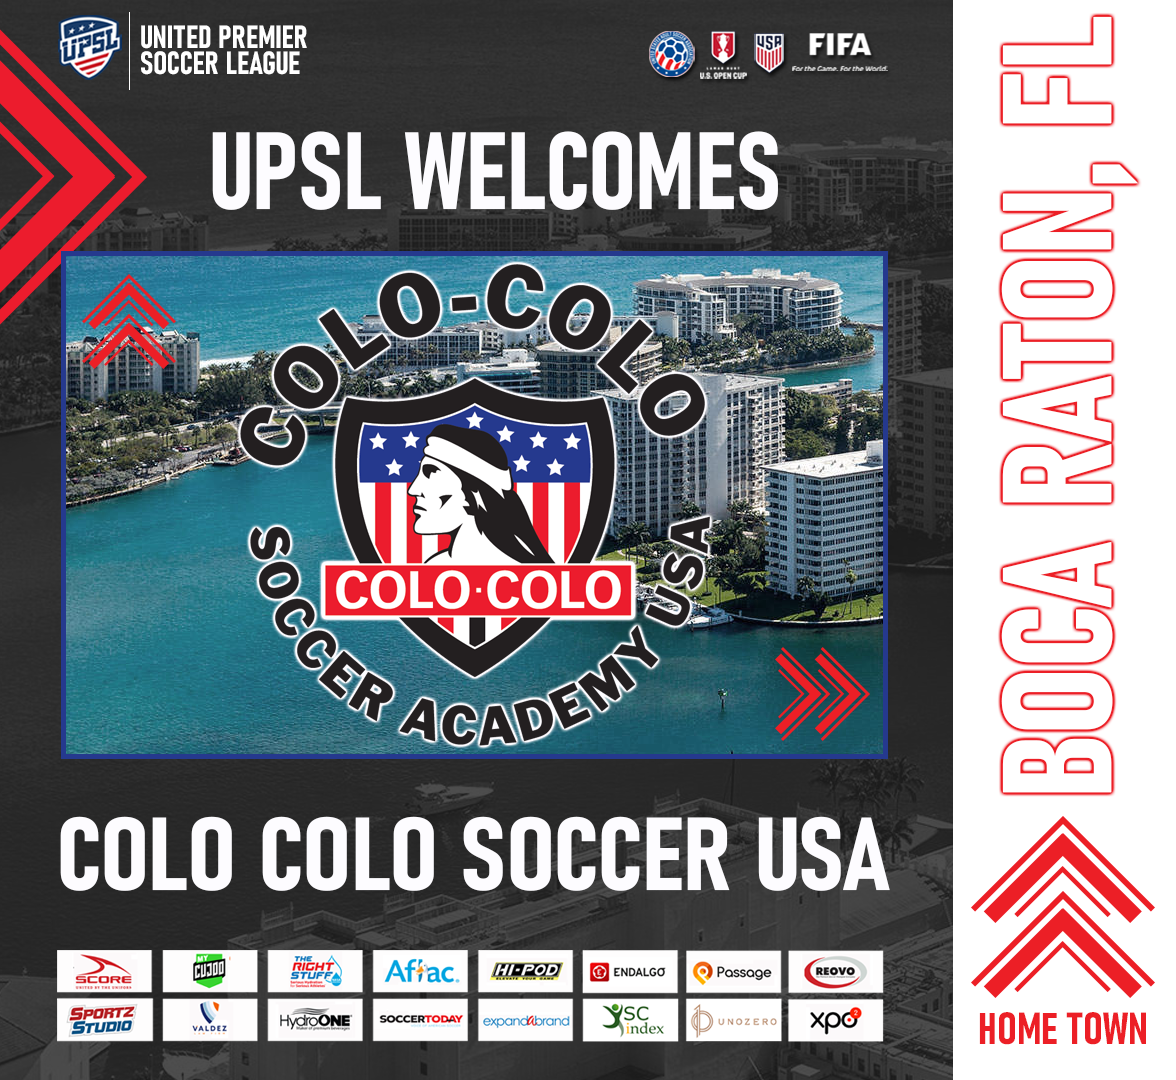 Men's Semi-Professional Team - Colo Colo Soccer Academy